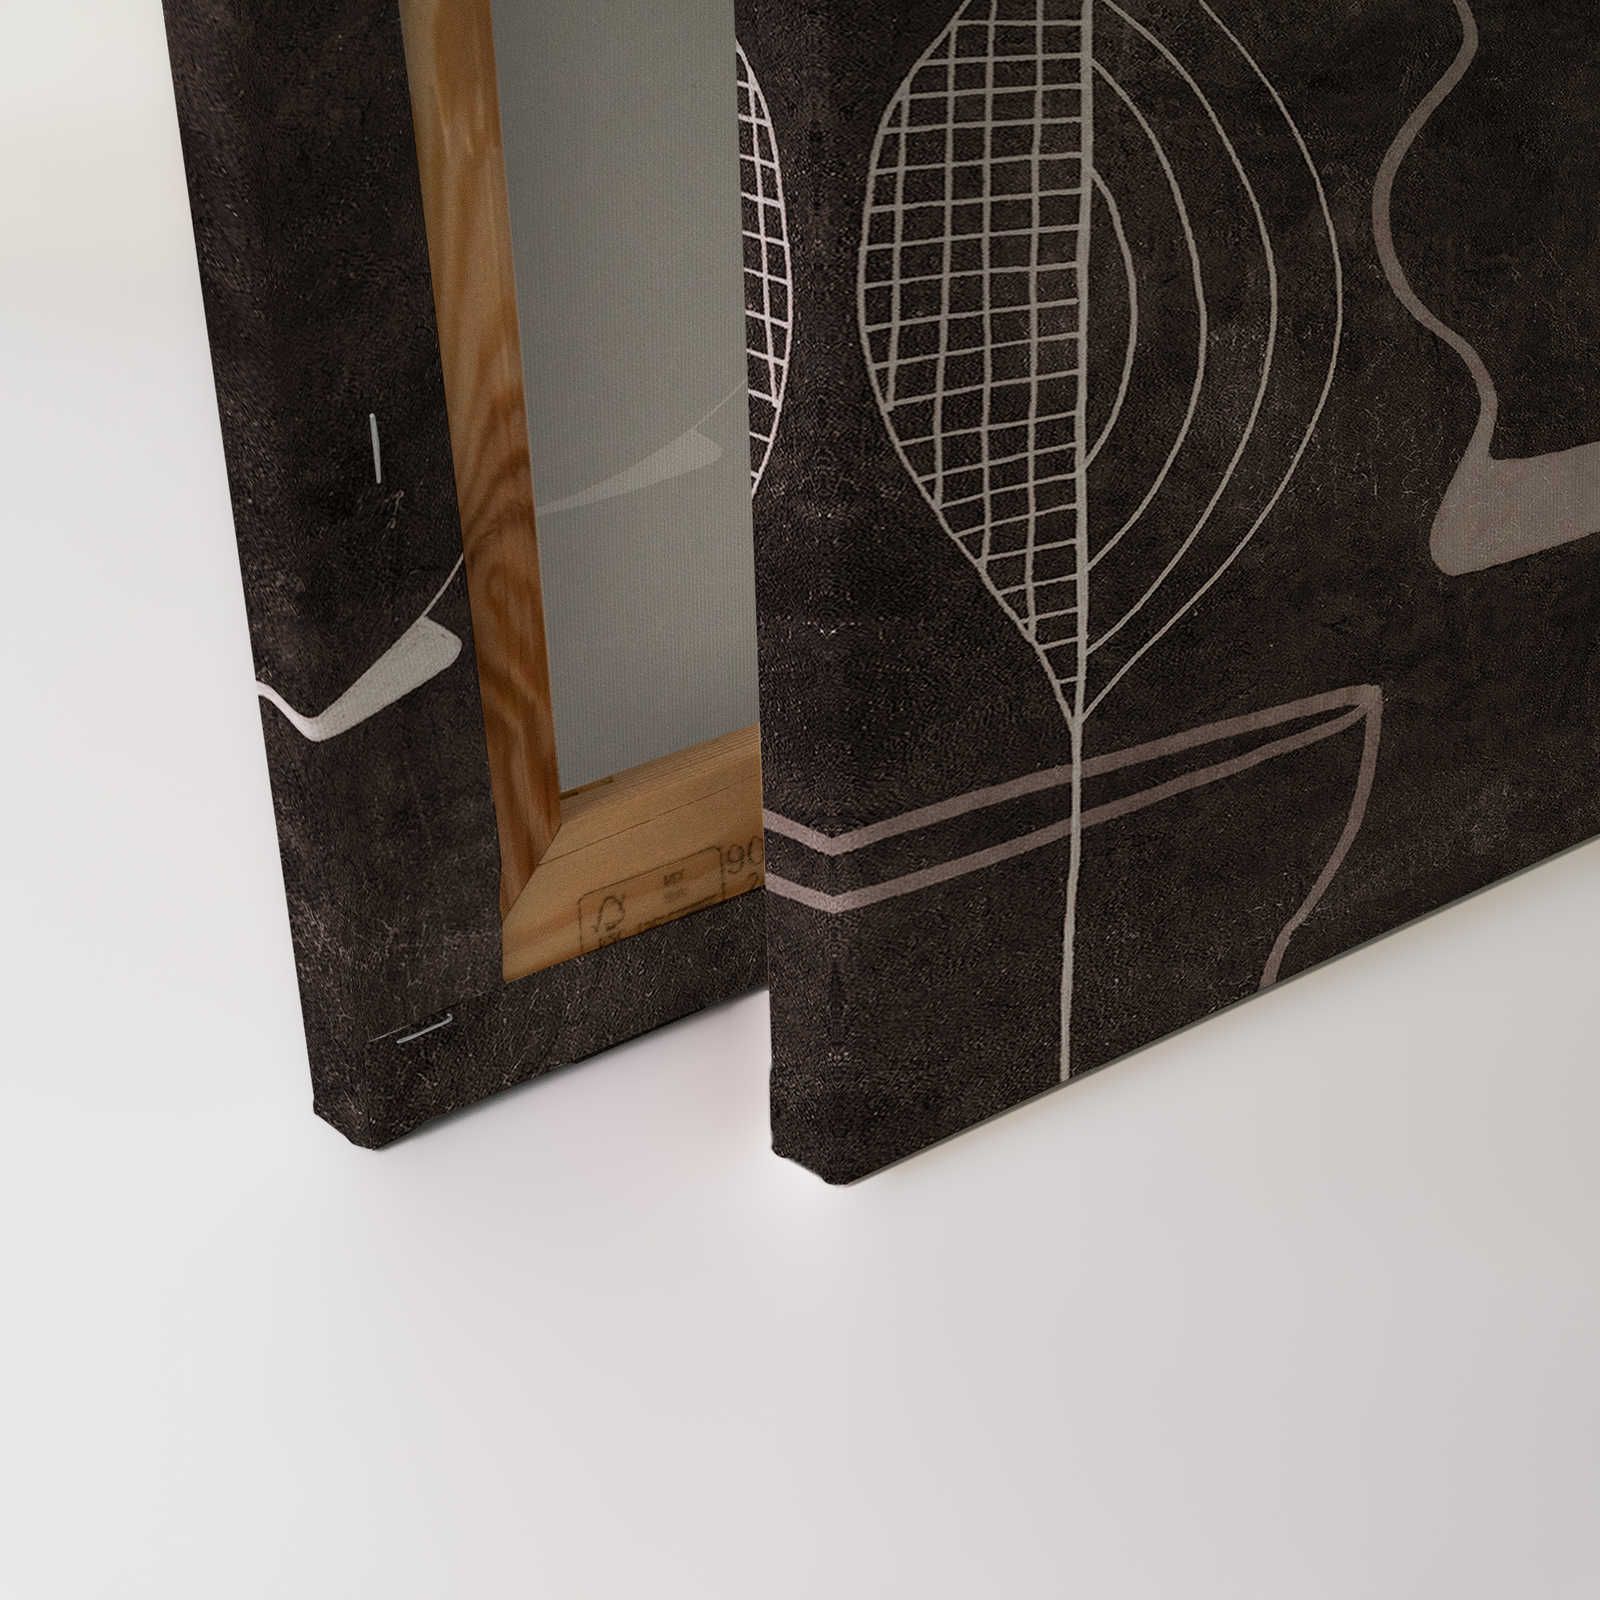             Pablos Room 2 - Toile noire Line Art Rétro Motif - 0,90 m x 0,60 m
        